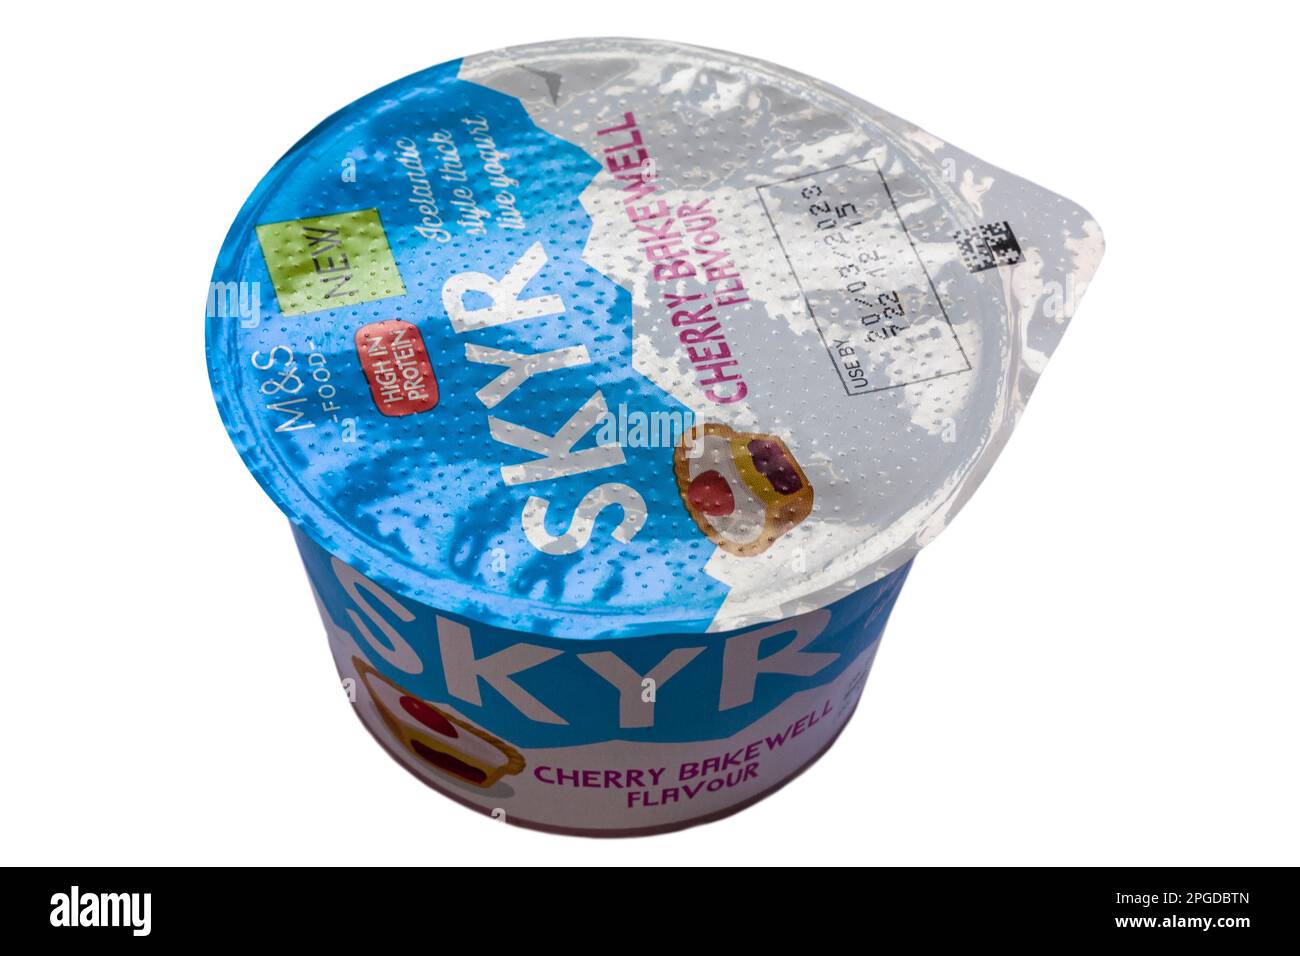 Vasetto di M&S Skyr Cherry Bakewell Flavor yogurt stile islandese spesso yogurt ad alto contenuto proteico isolato su sfondo bianco Foto Stock